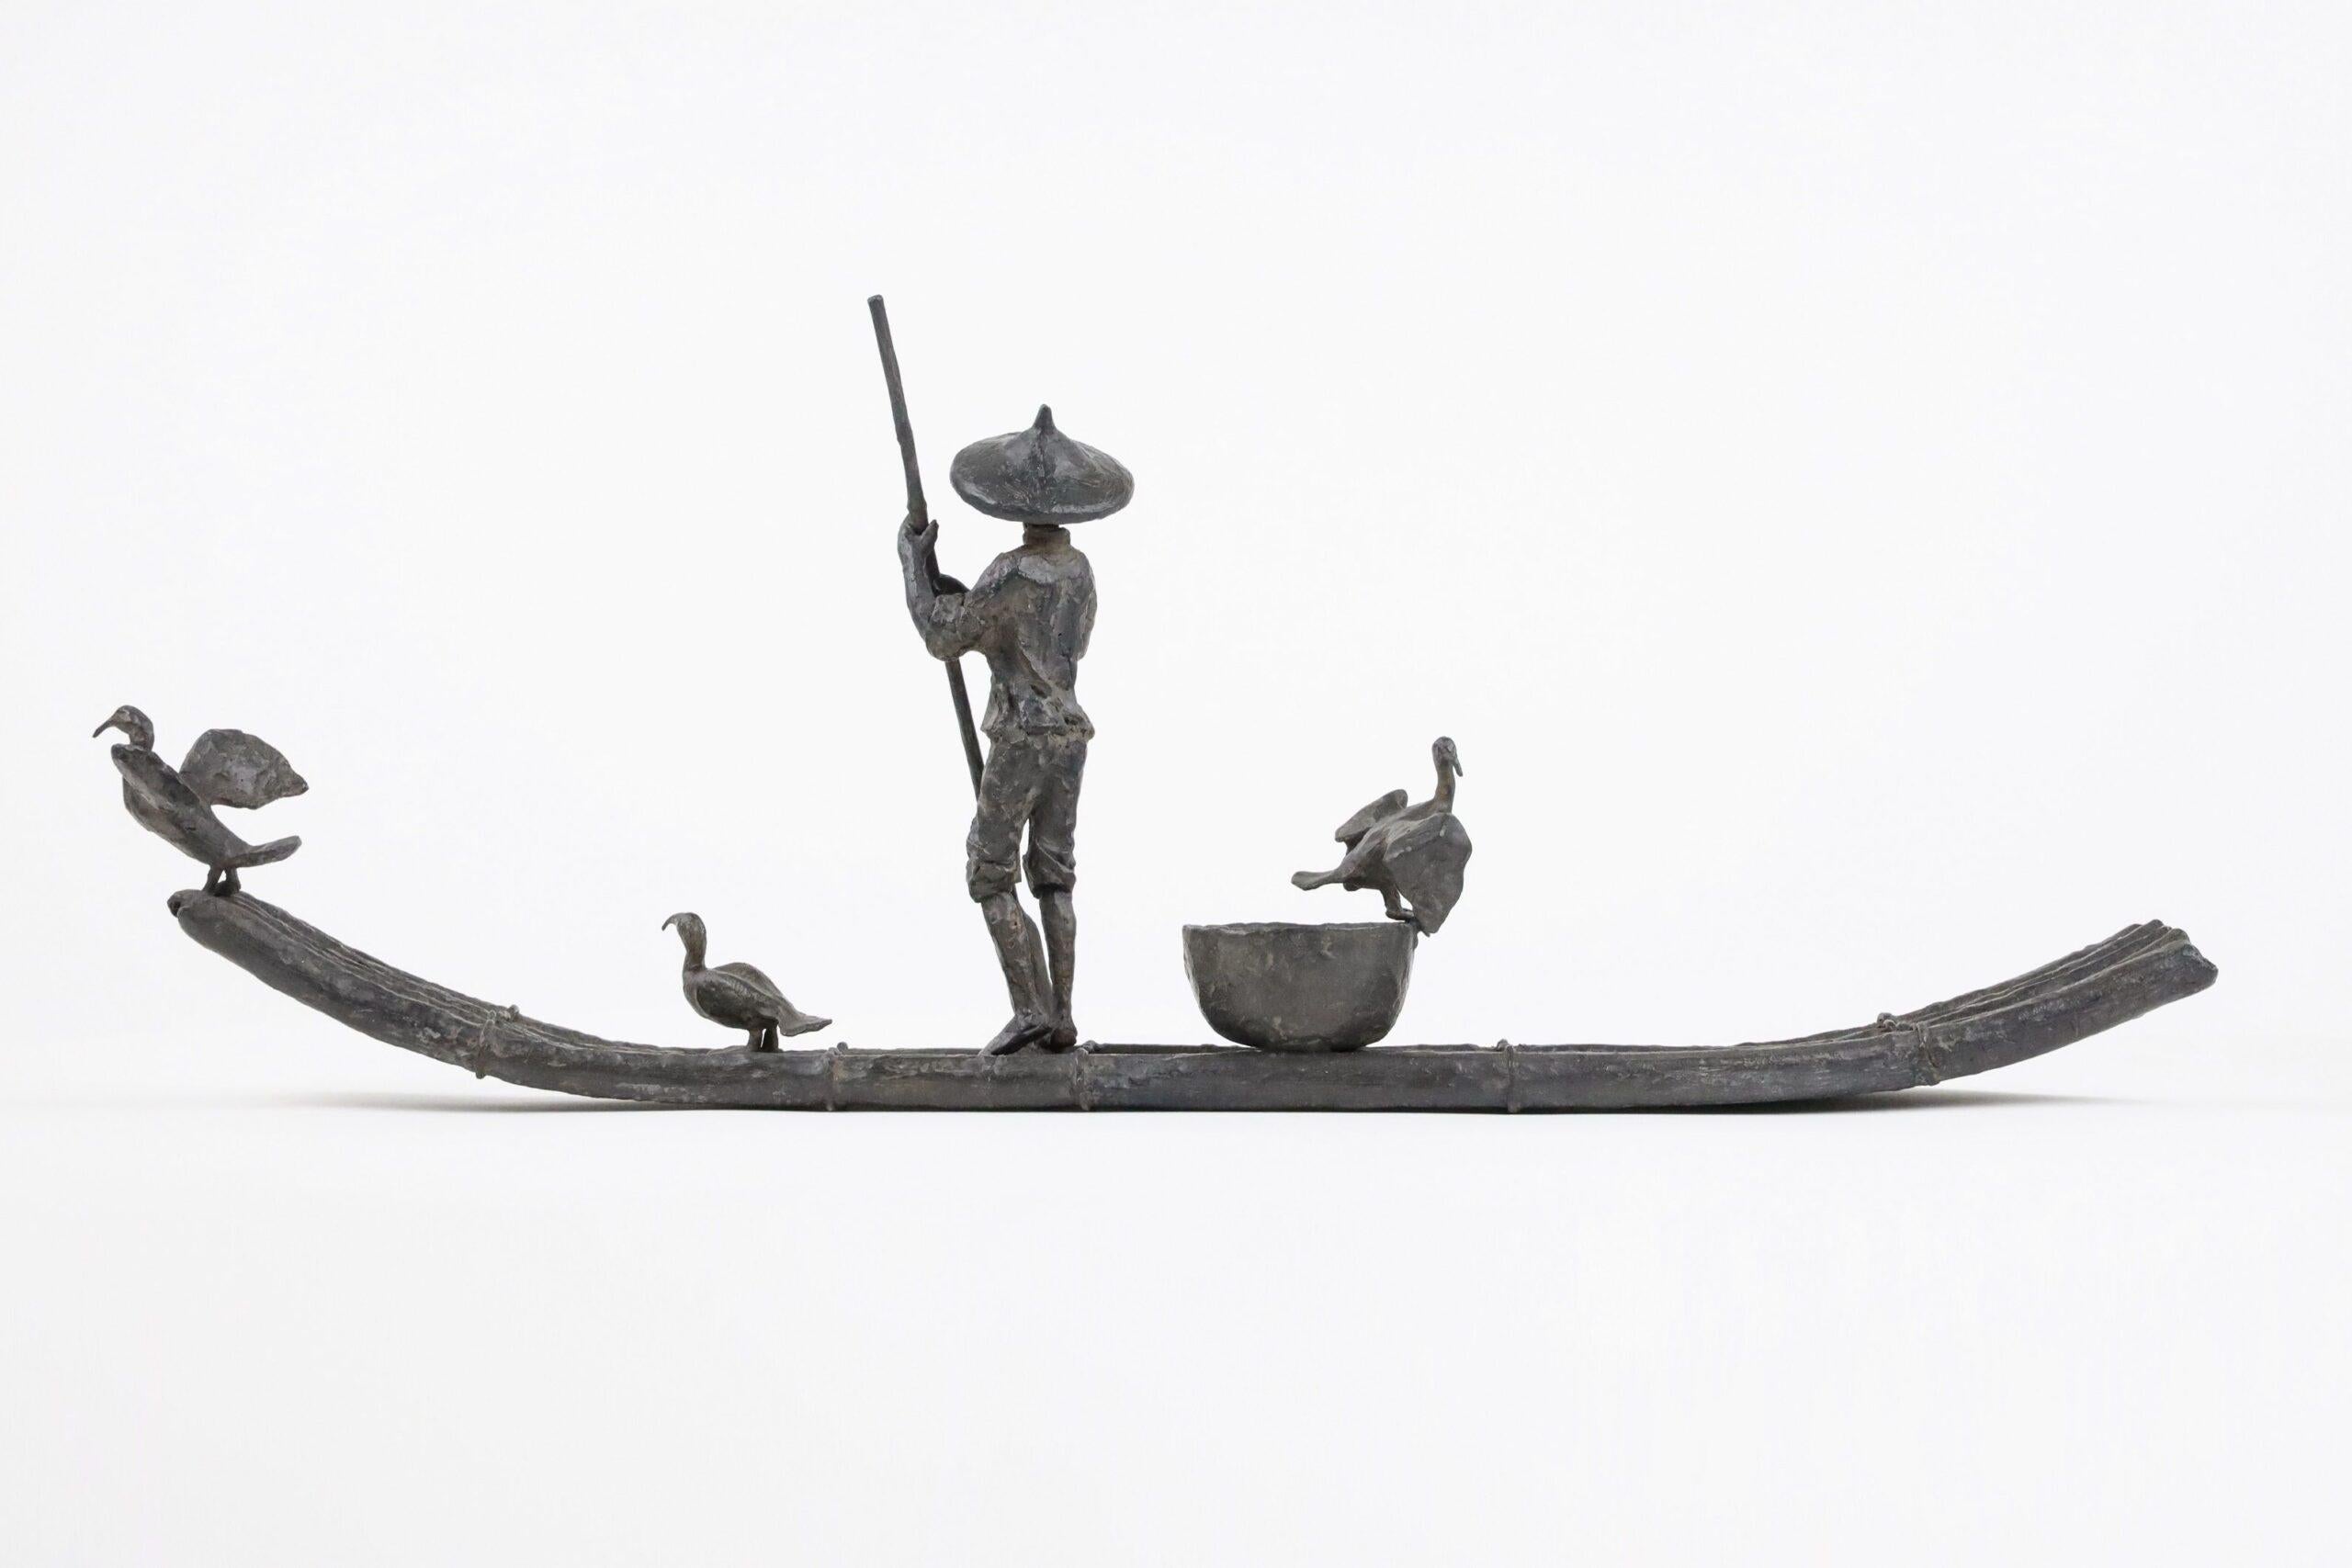 Cormorant Fishing by Marine de Soos - Bronze sculpture, human figure, boat, bird For Sale 3